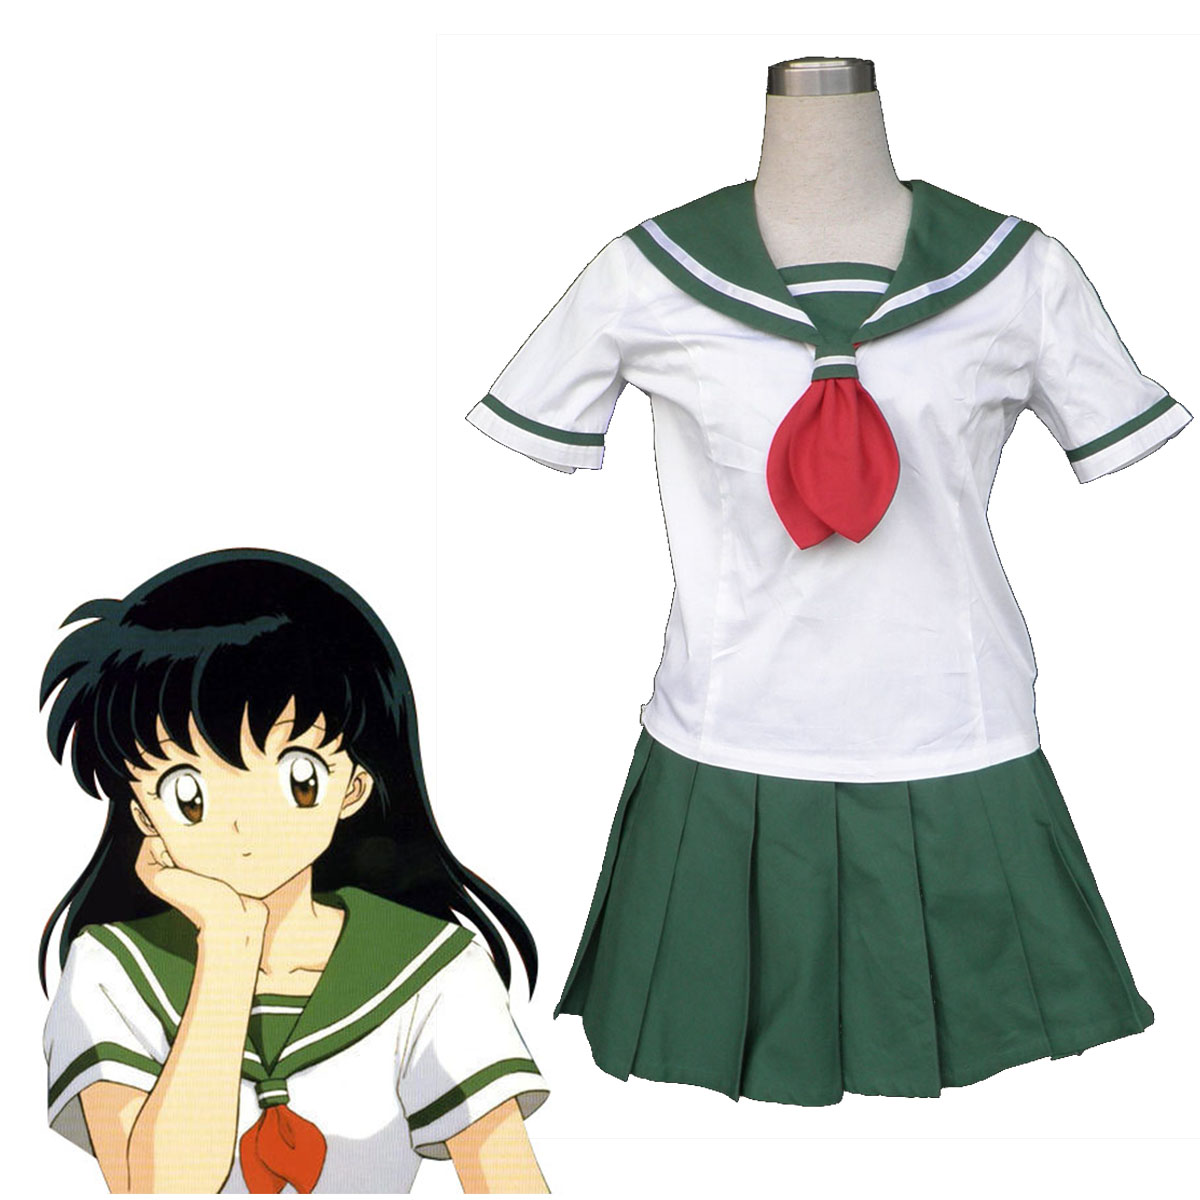 Inuyasha Kagome Higurashi 2 Sailor Anime Cosplay Costumes Outfit